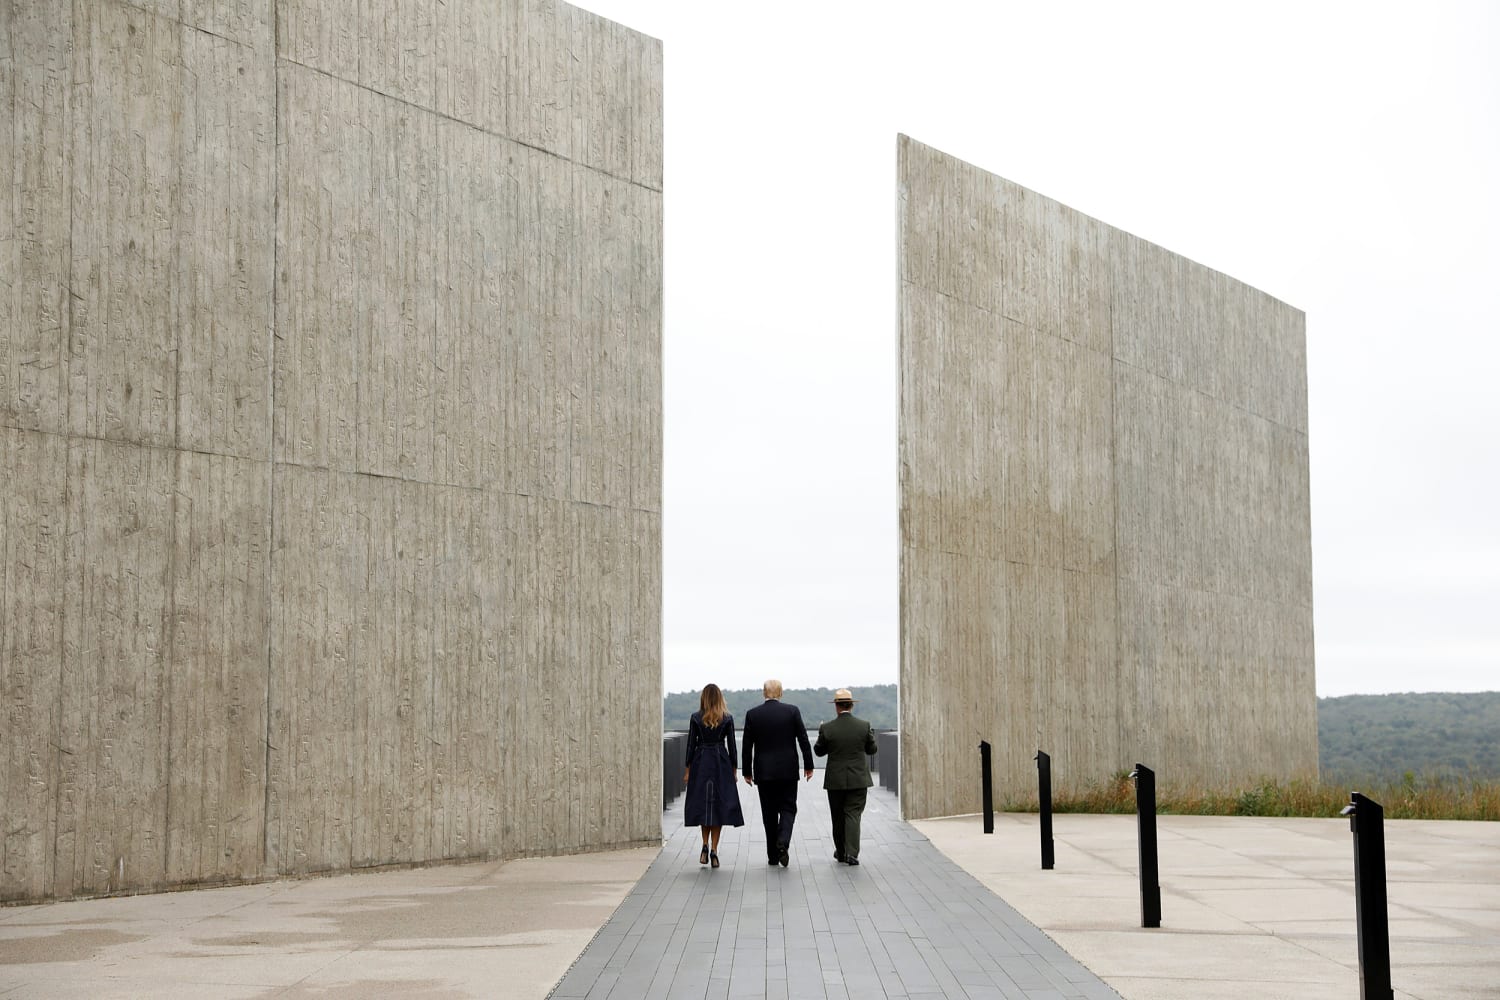 flight 93 memorial wall